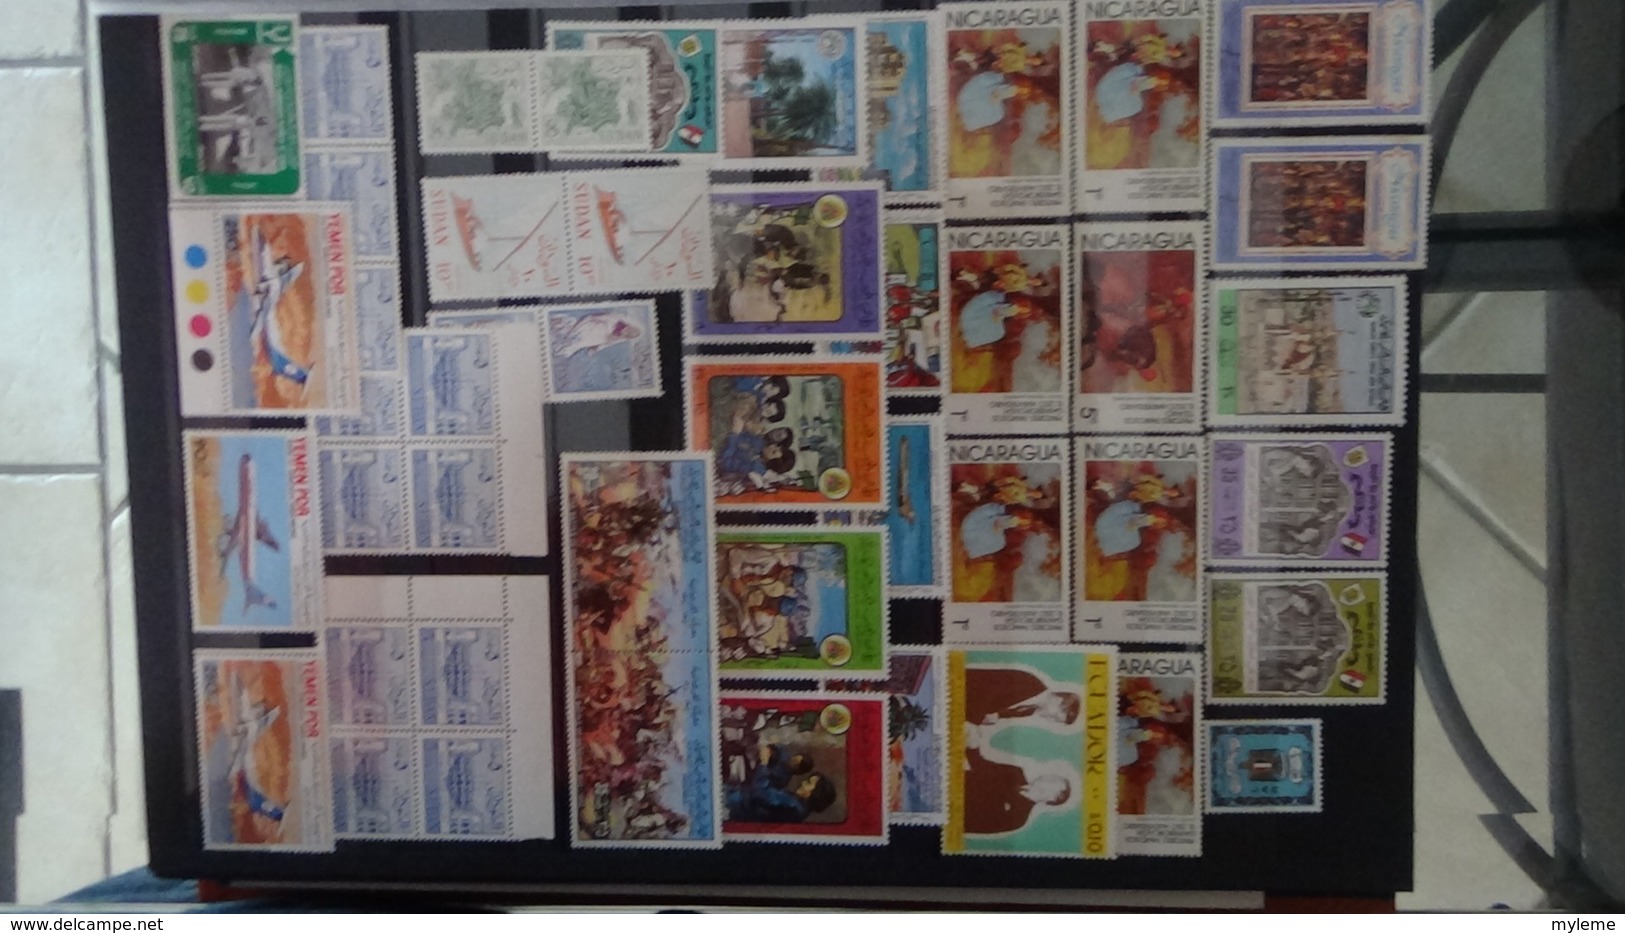 Collection de timbres et blocs ** du MONDE. PORT OFFERT DES 50 EUROS D'ACHATS. Voir commentaires